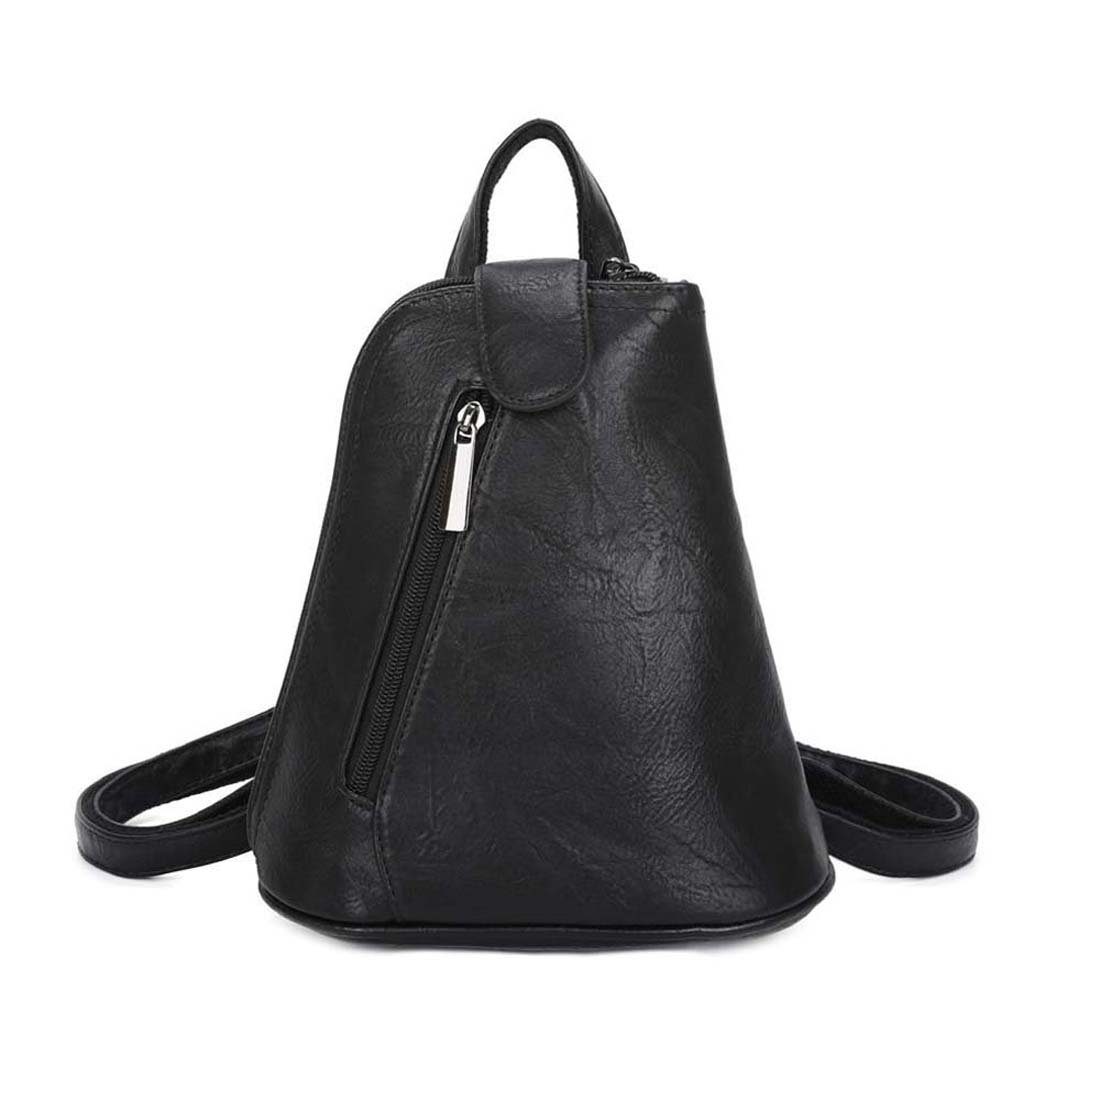 Rucksack, Umhängetasche Schultertasche / kleiner tragbar Rucksack ITALYSHOP24 Crossover, Handtasche Damen Schwarz Tasche